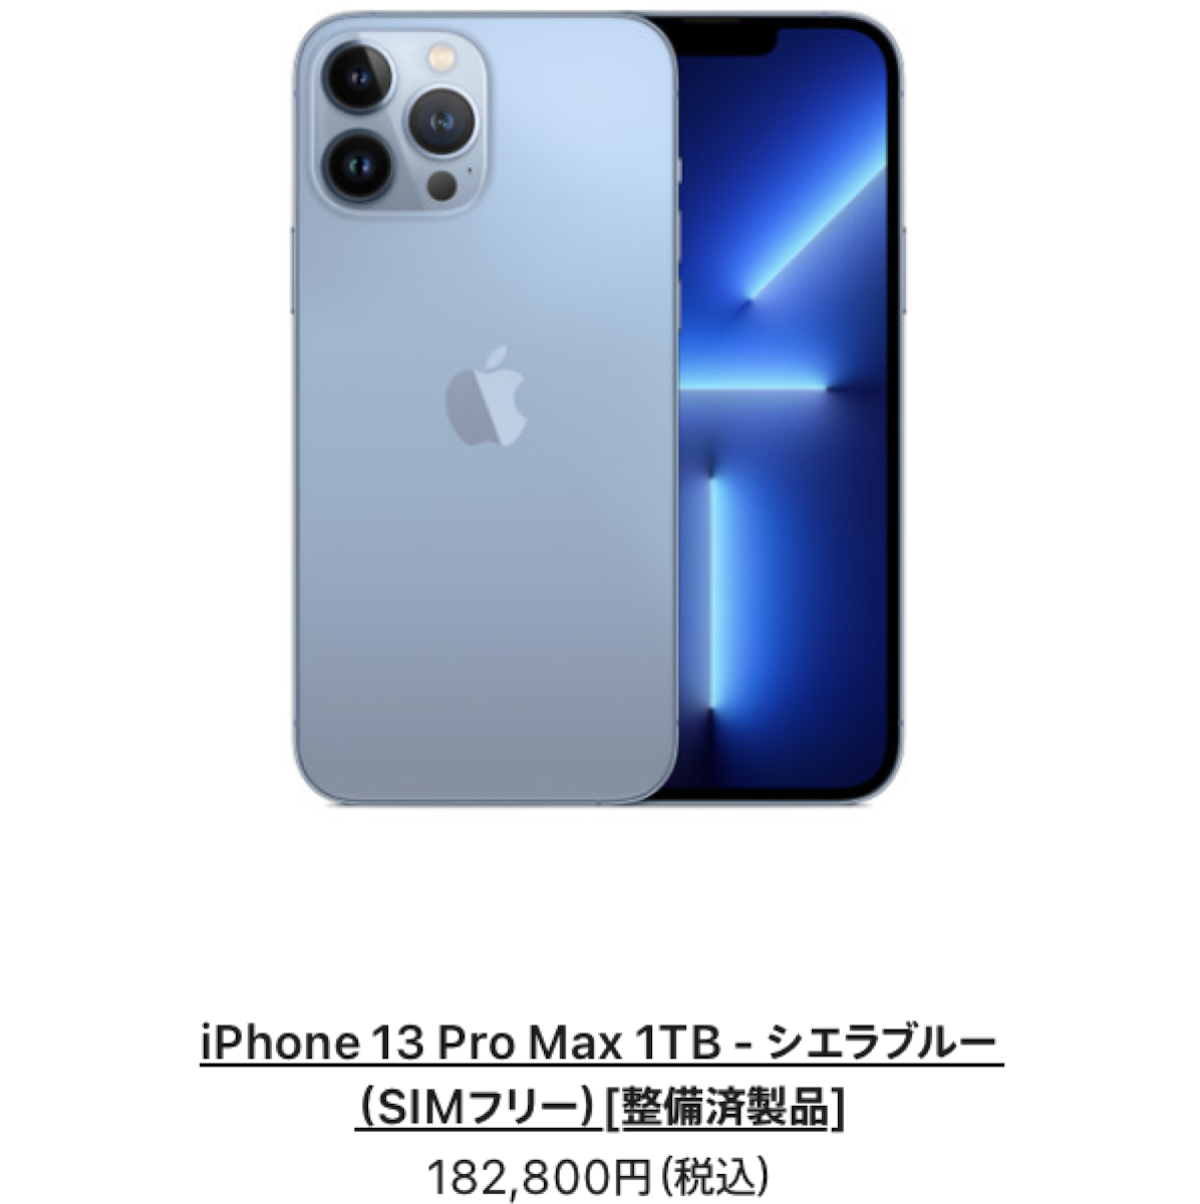 iPhone13 Pro Maxが入荷〜iPhone整備済製品情報【12/21】 - iPhone Mania